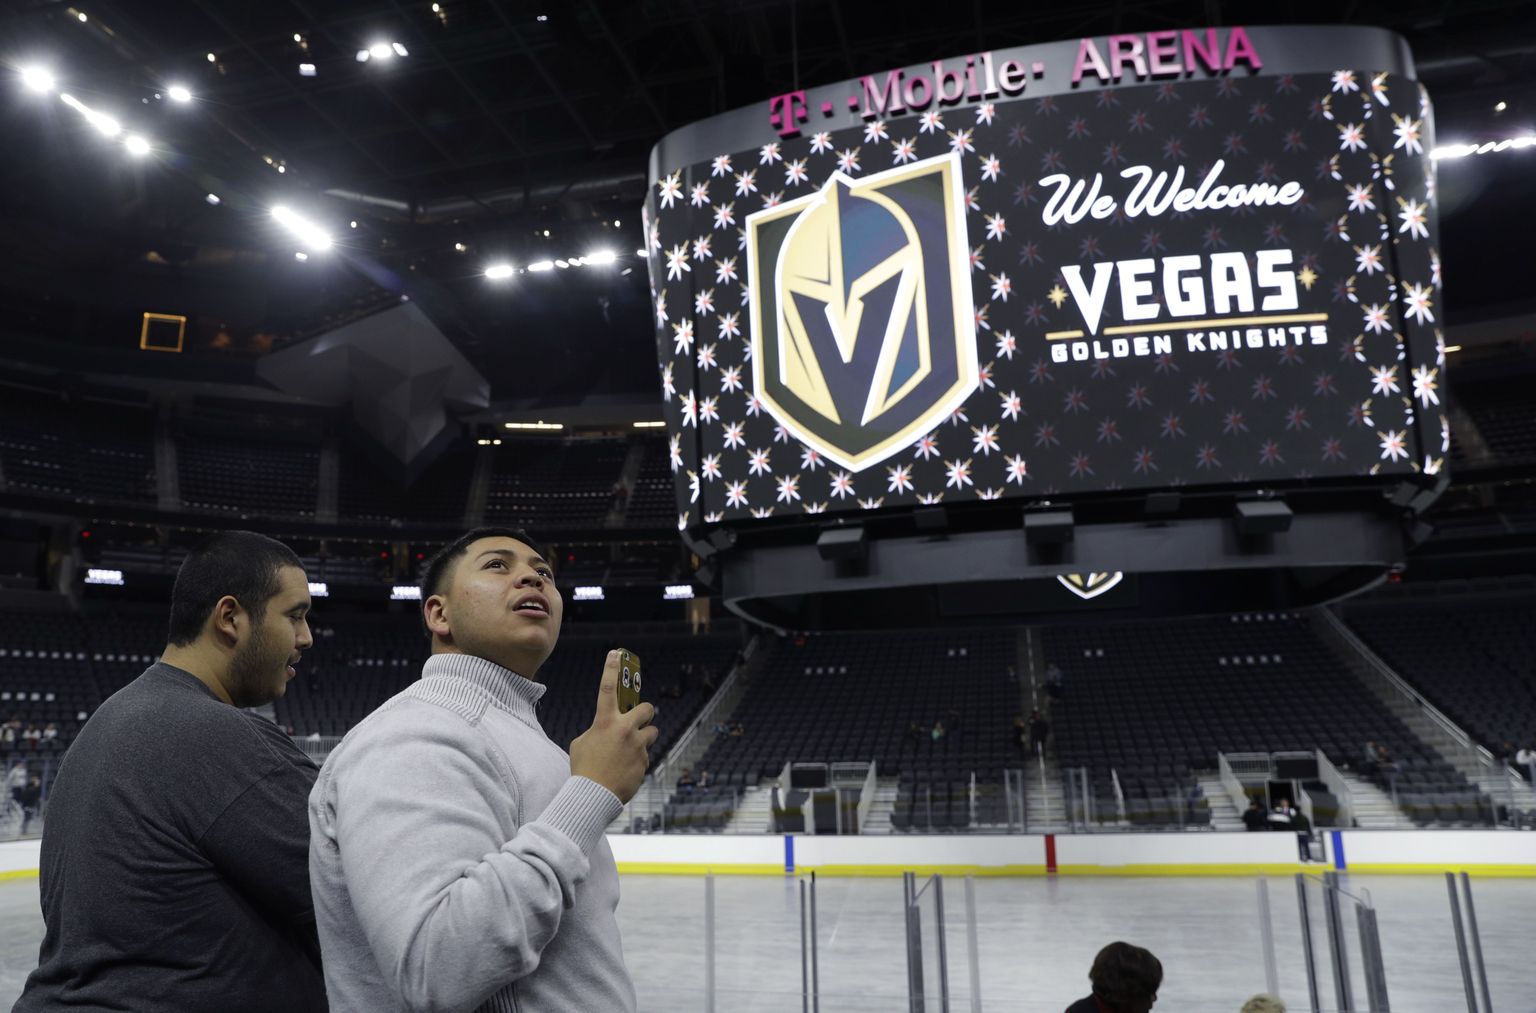 Las Vegase NHLi-meeskonna Vegas Golden Knights esitlus.